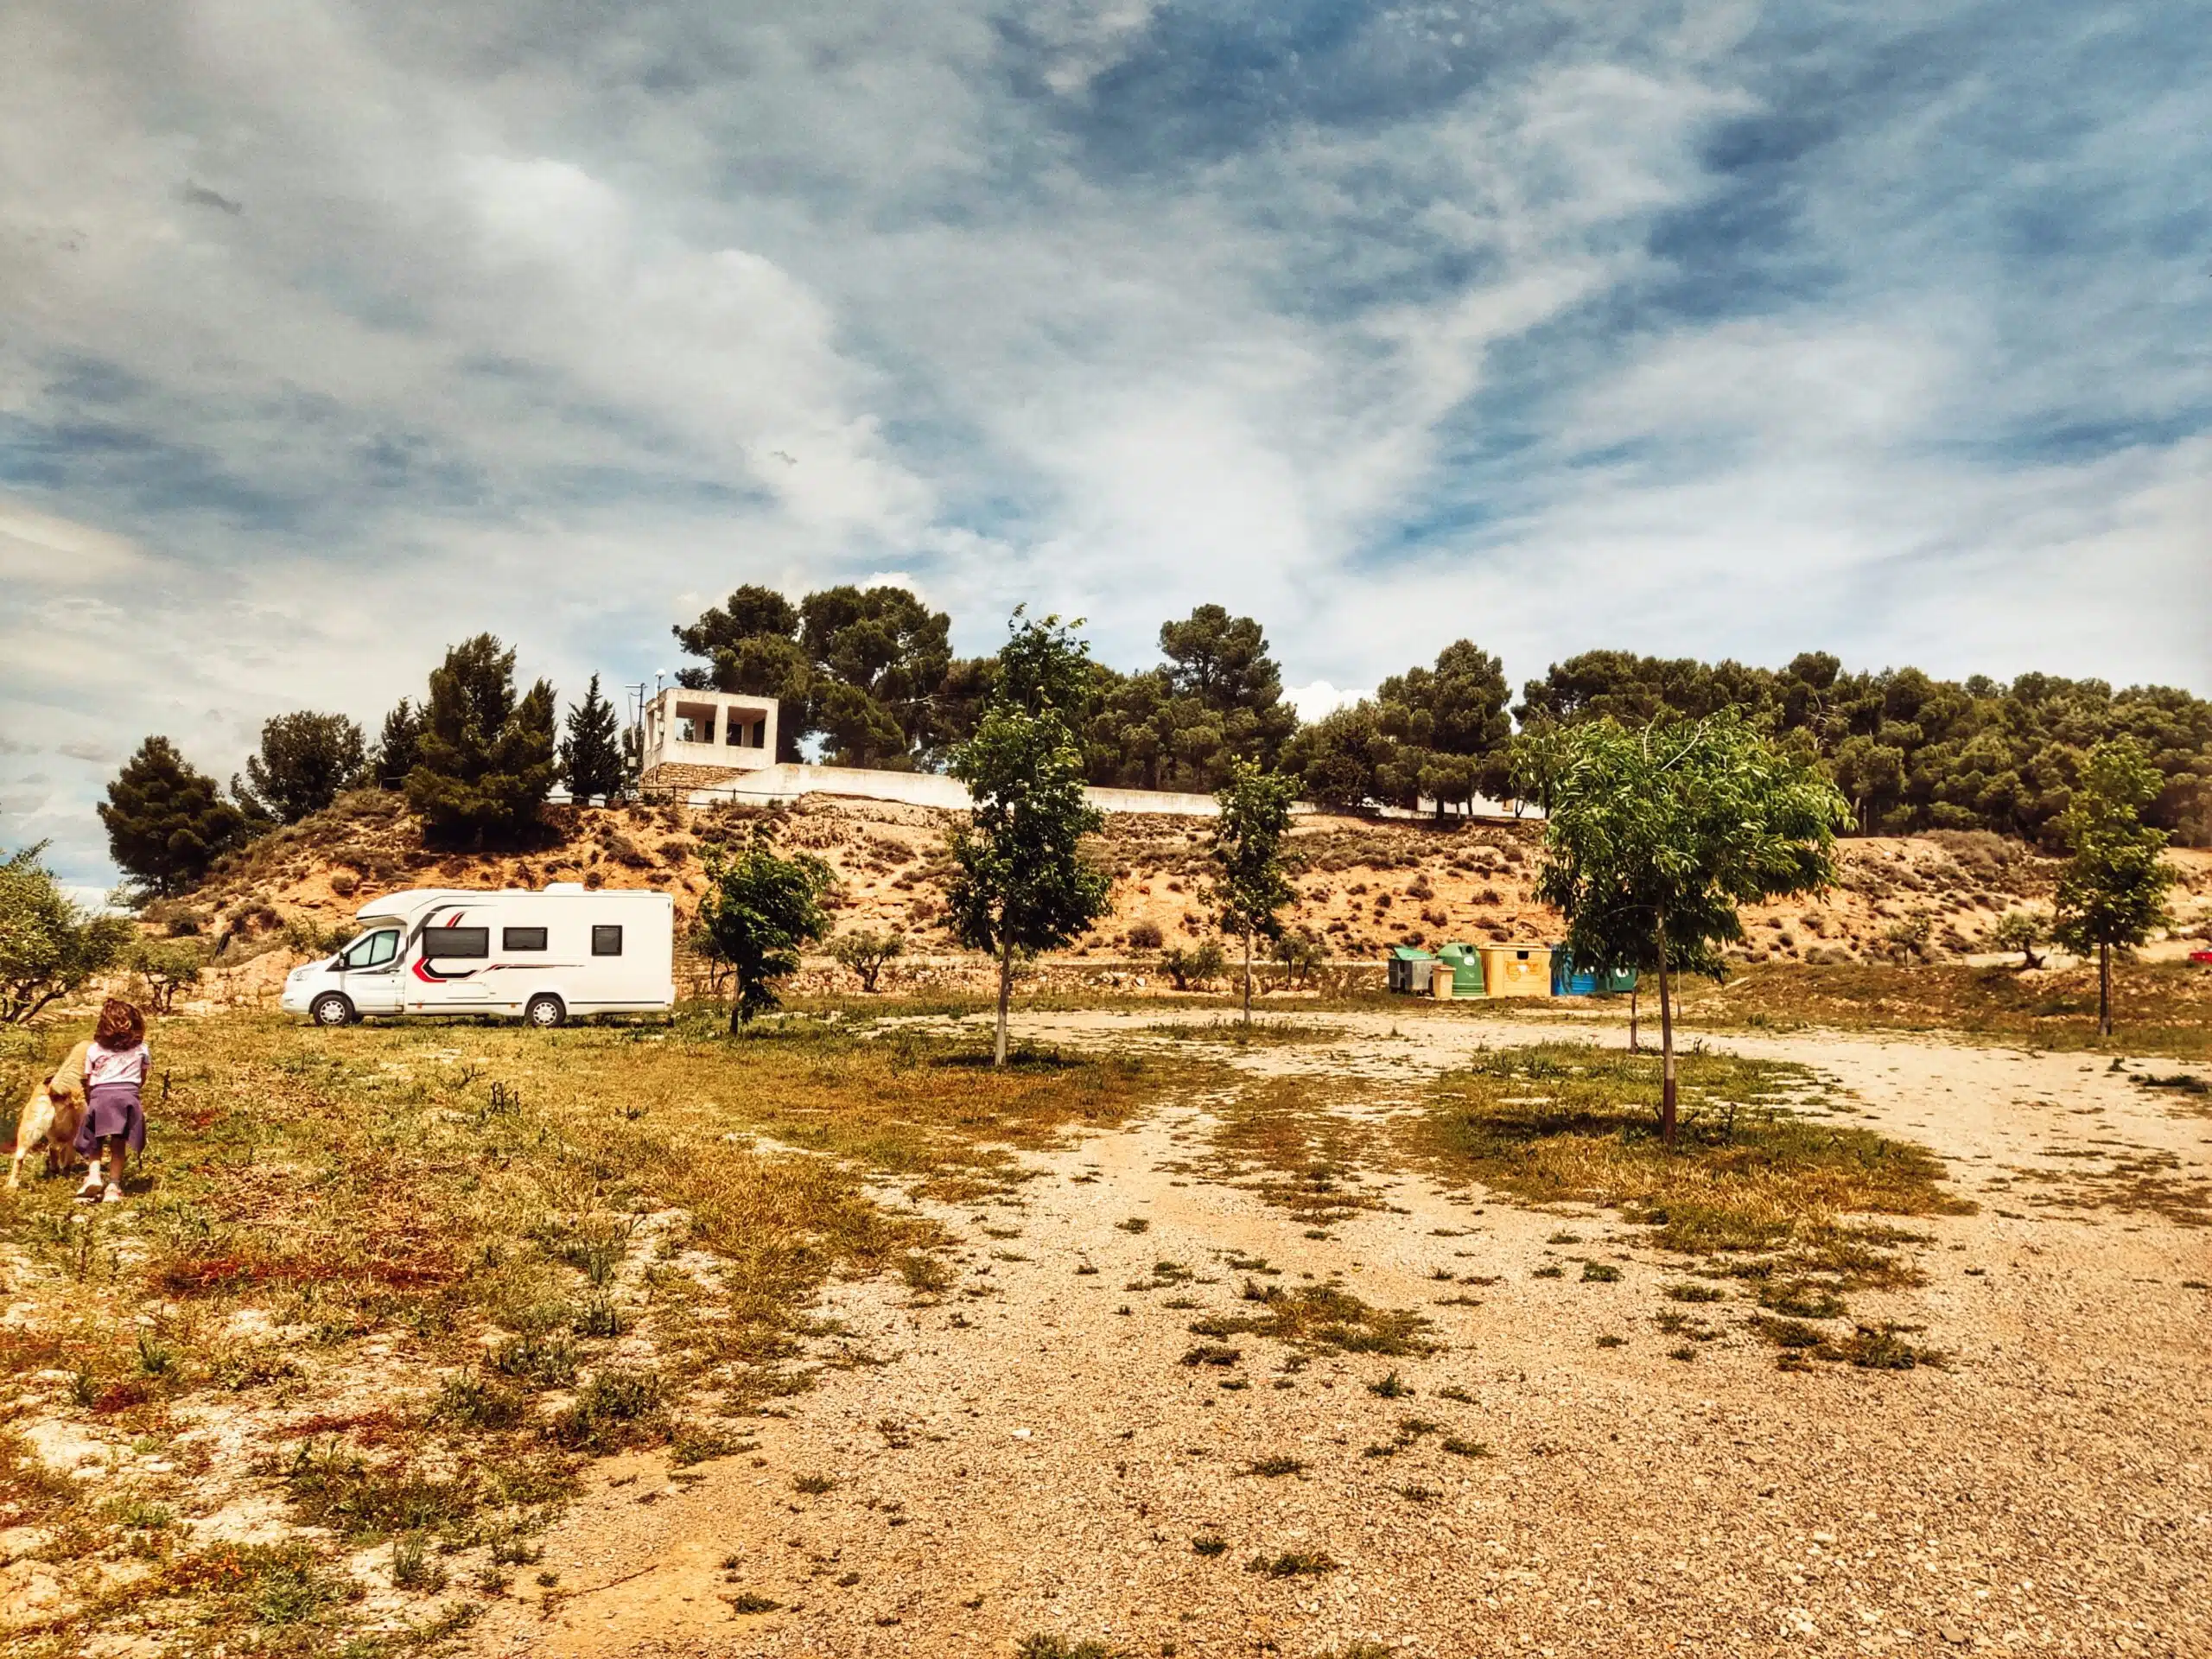 Lire la suite de l'article Catalogne en camping-car pour les 10 meilleures destinations et les meilleures aires de camping-car de Catalogne